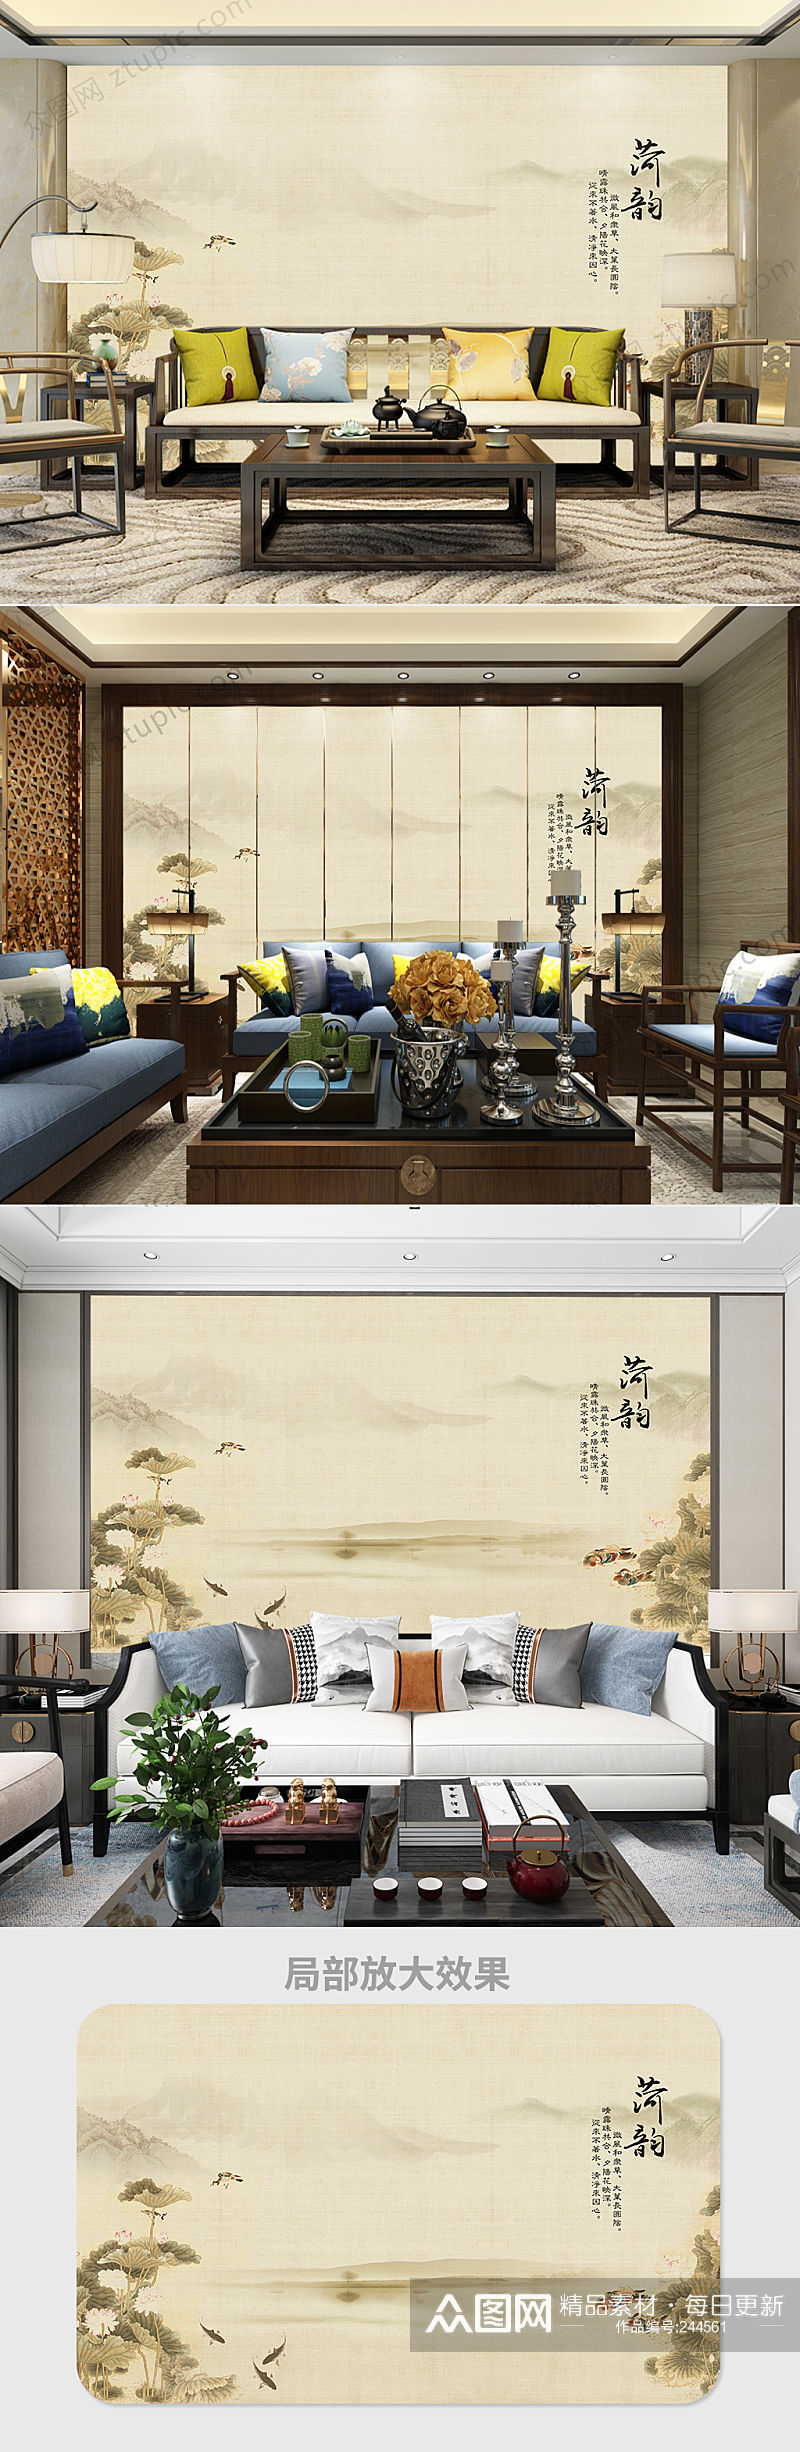 中式手绘荷花背景墙素材